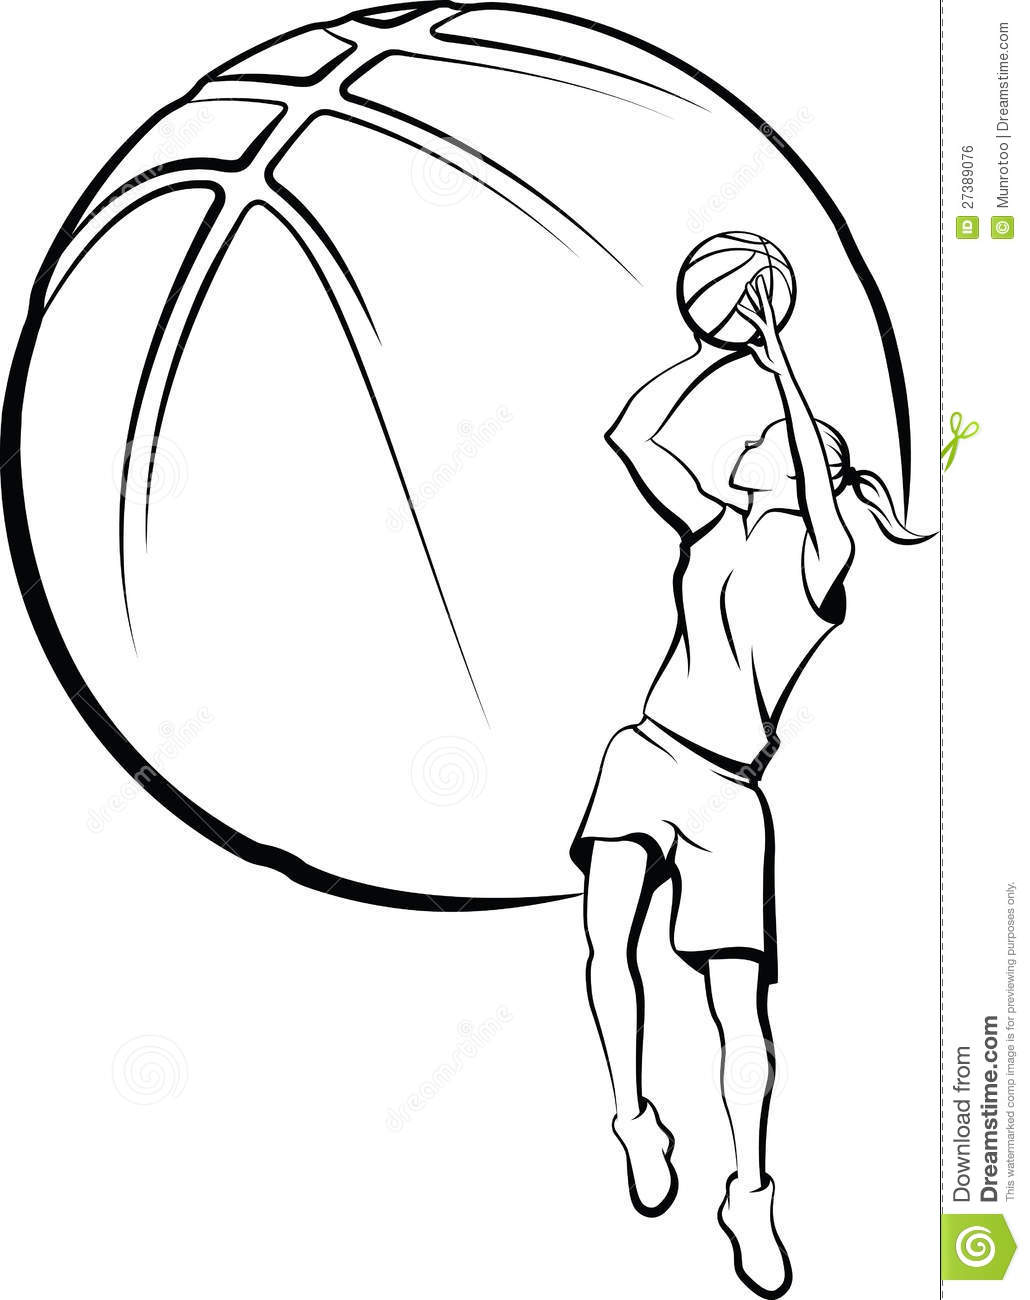 Basketball Player Shooting Clip Art Basketball Player Shooting